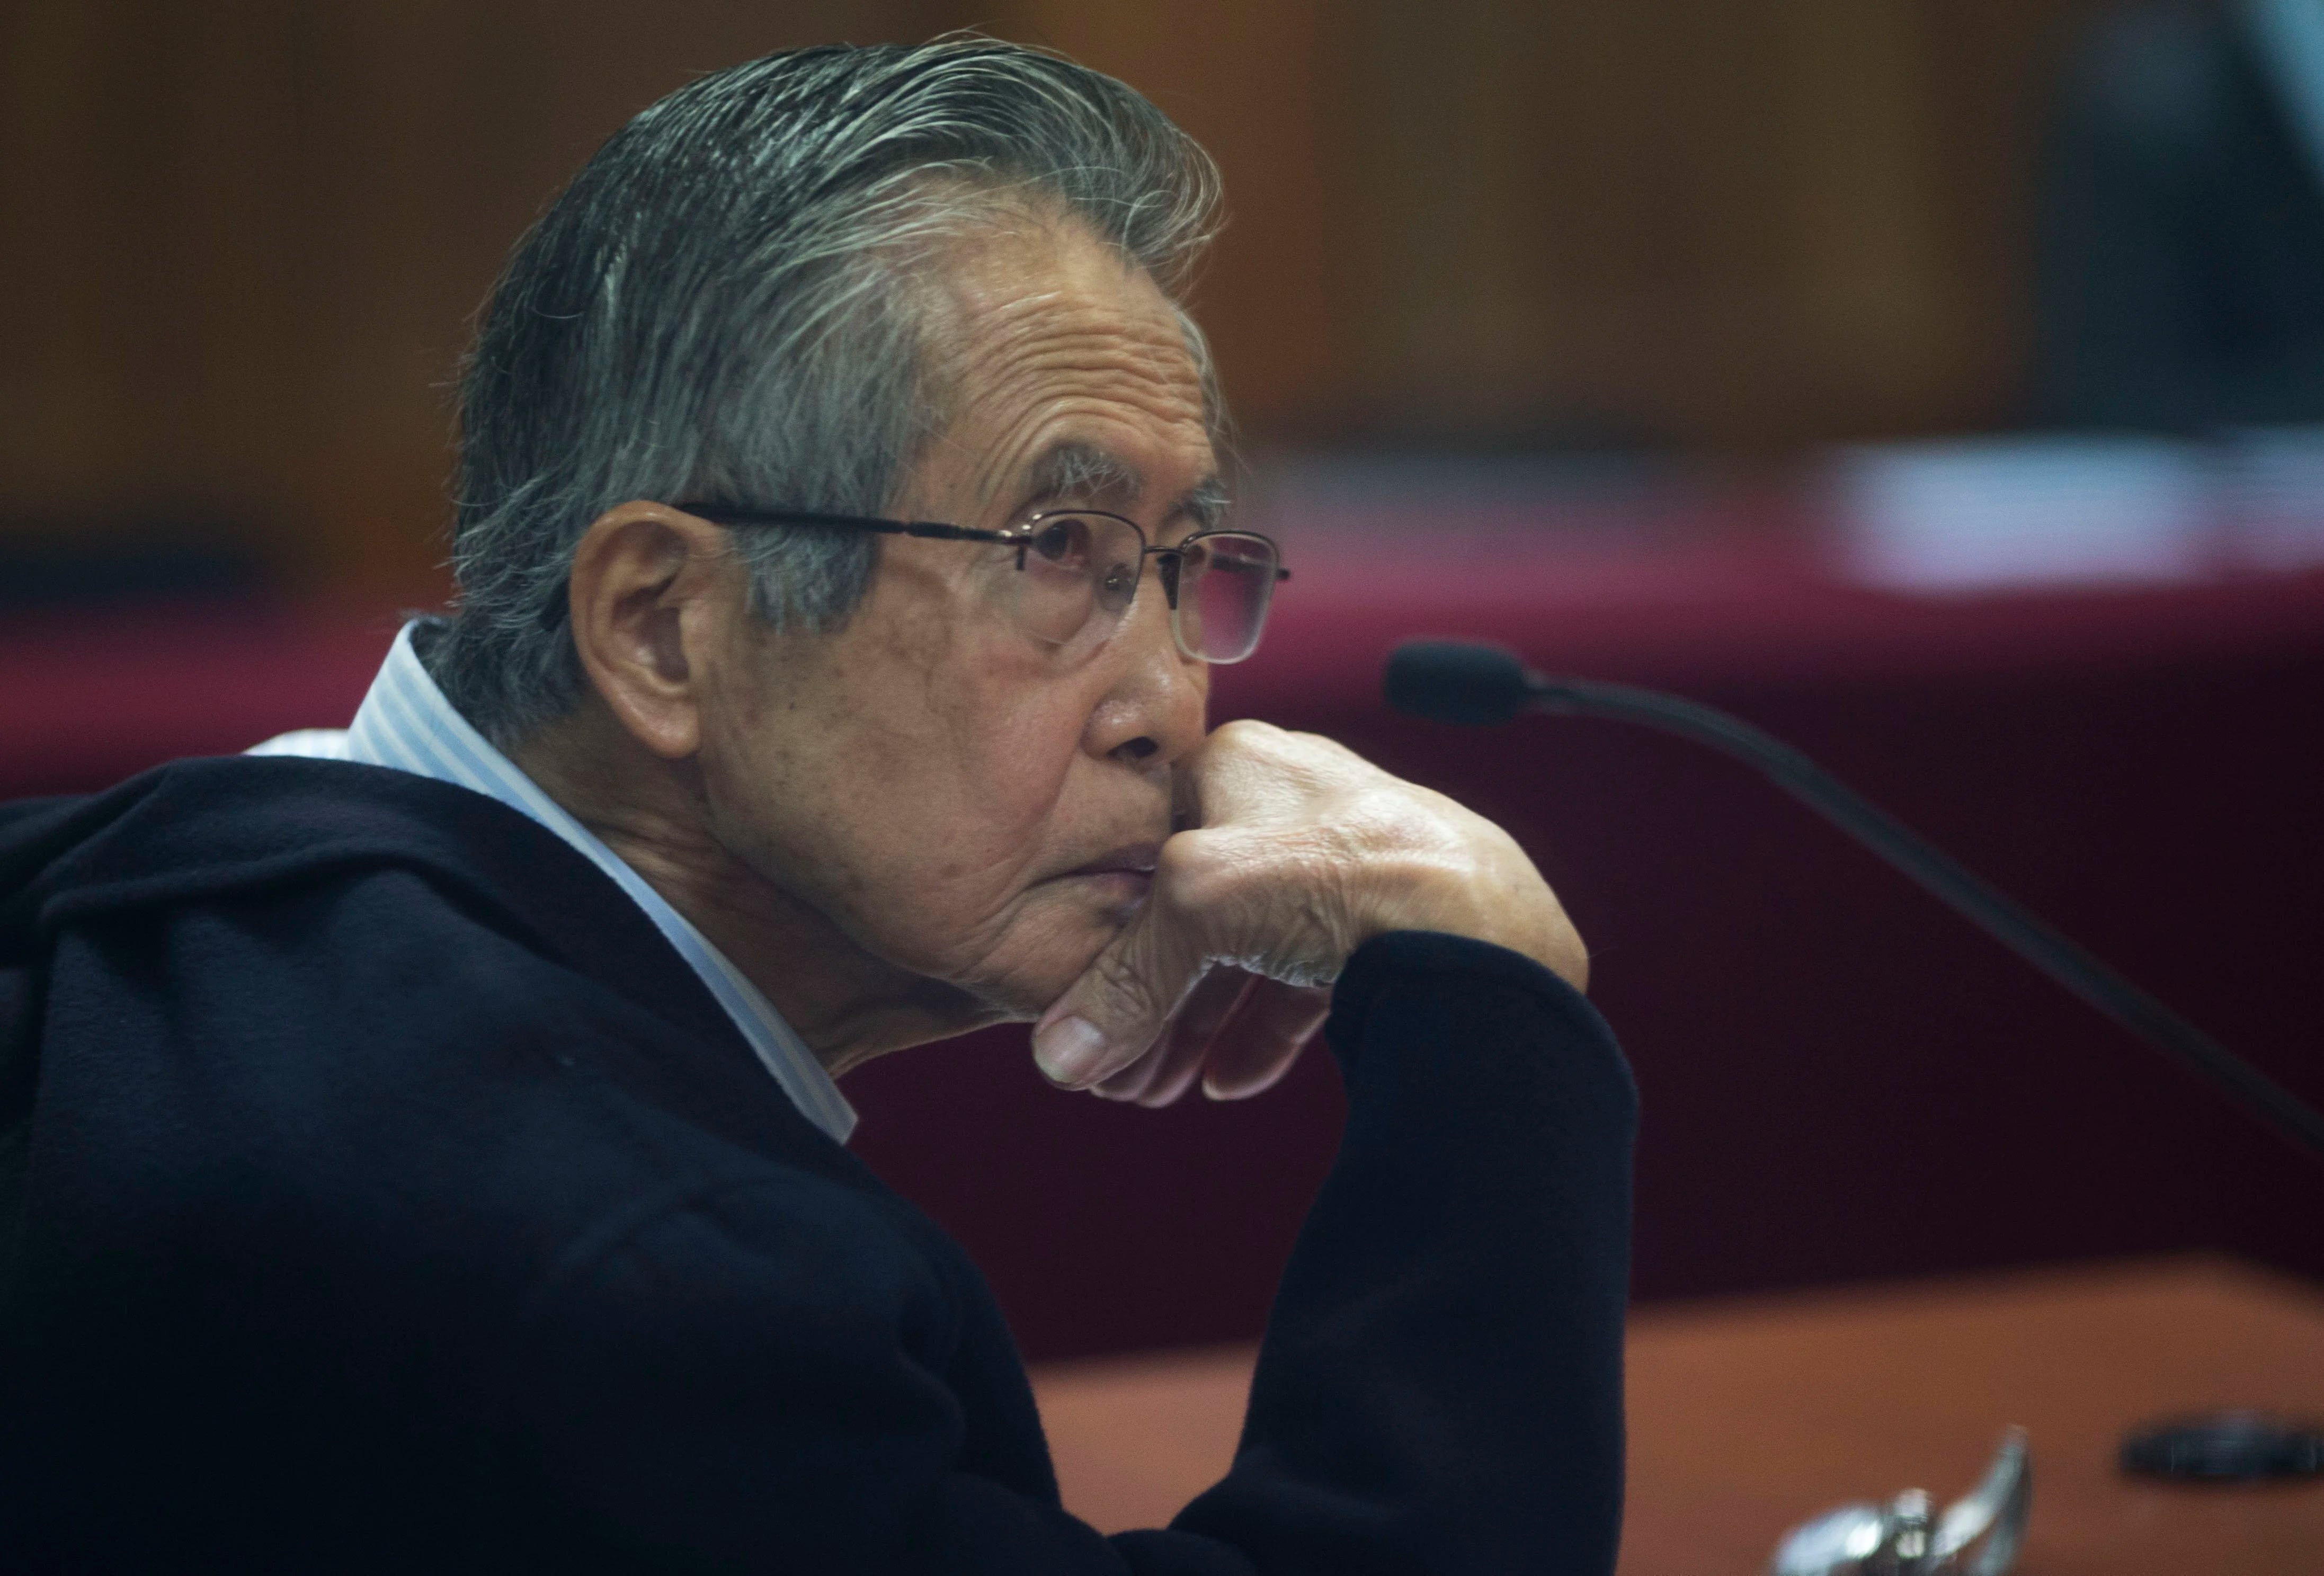 Alberto Fujimori confirma sus aspiraciones a ostentar un cargo público, en medio de controversias sobre si es posible que postule o no. Composición Infobae.